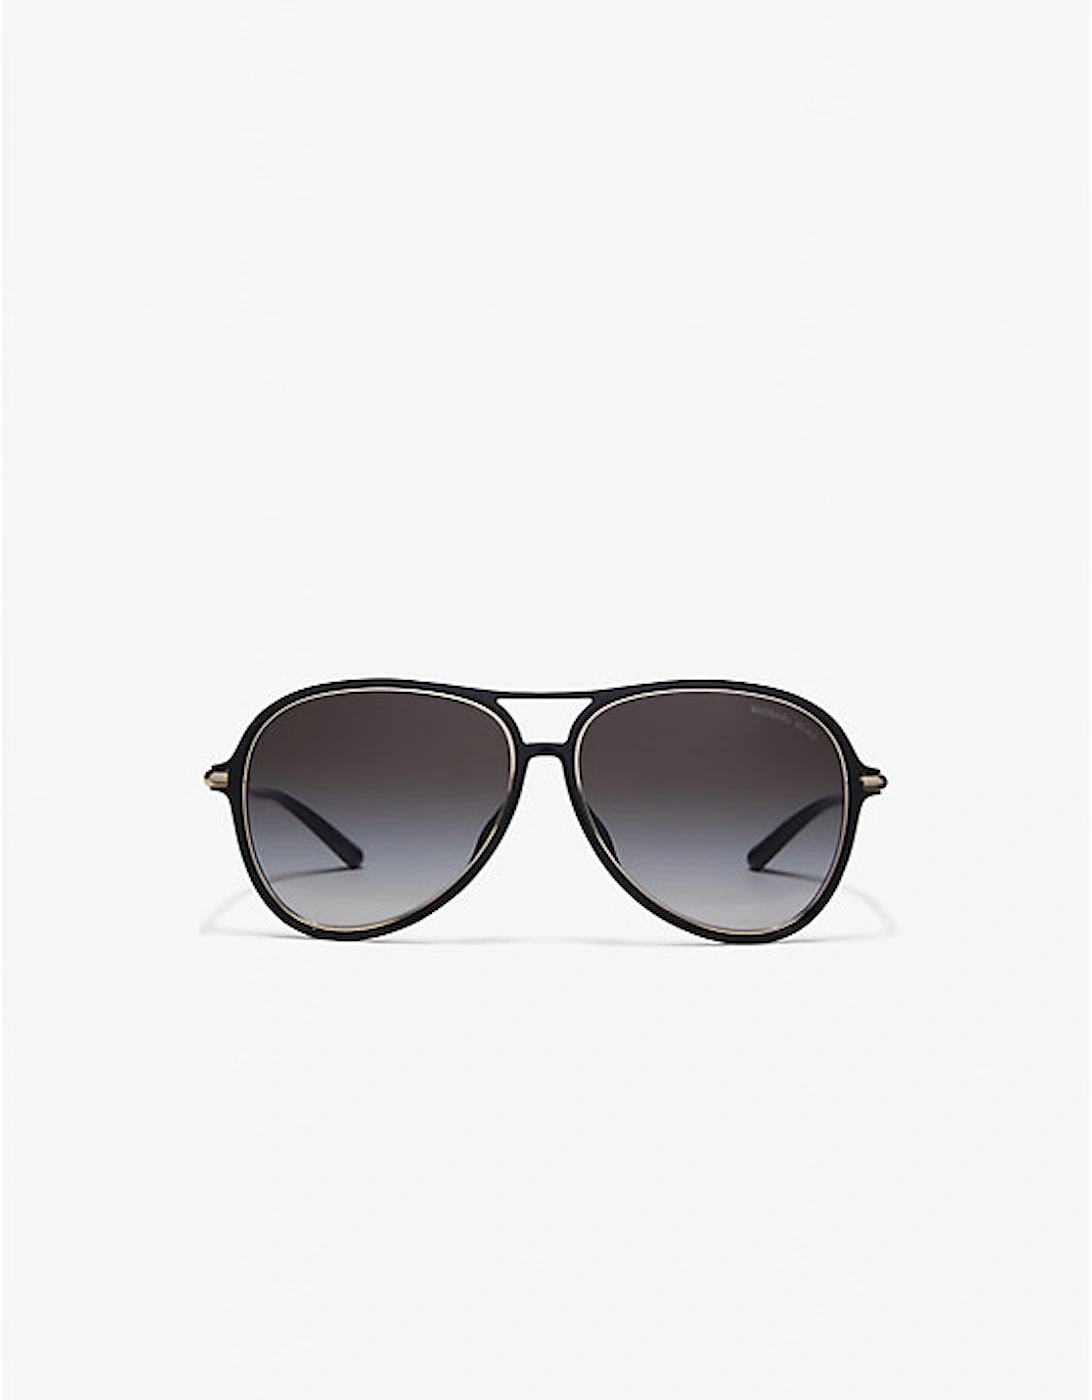 Breckenridge Sunglasses, 2 of 1